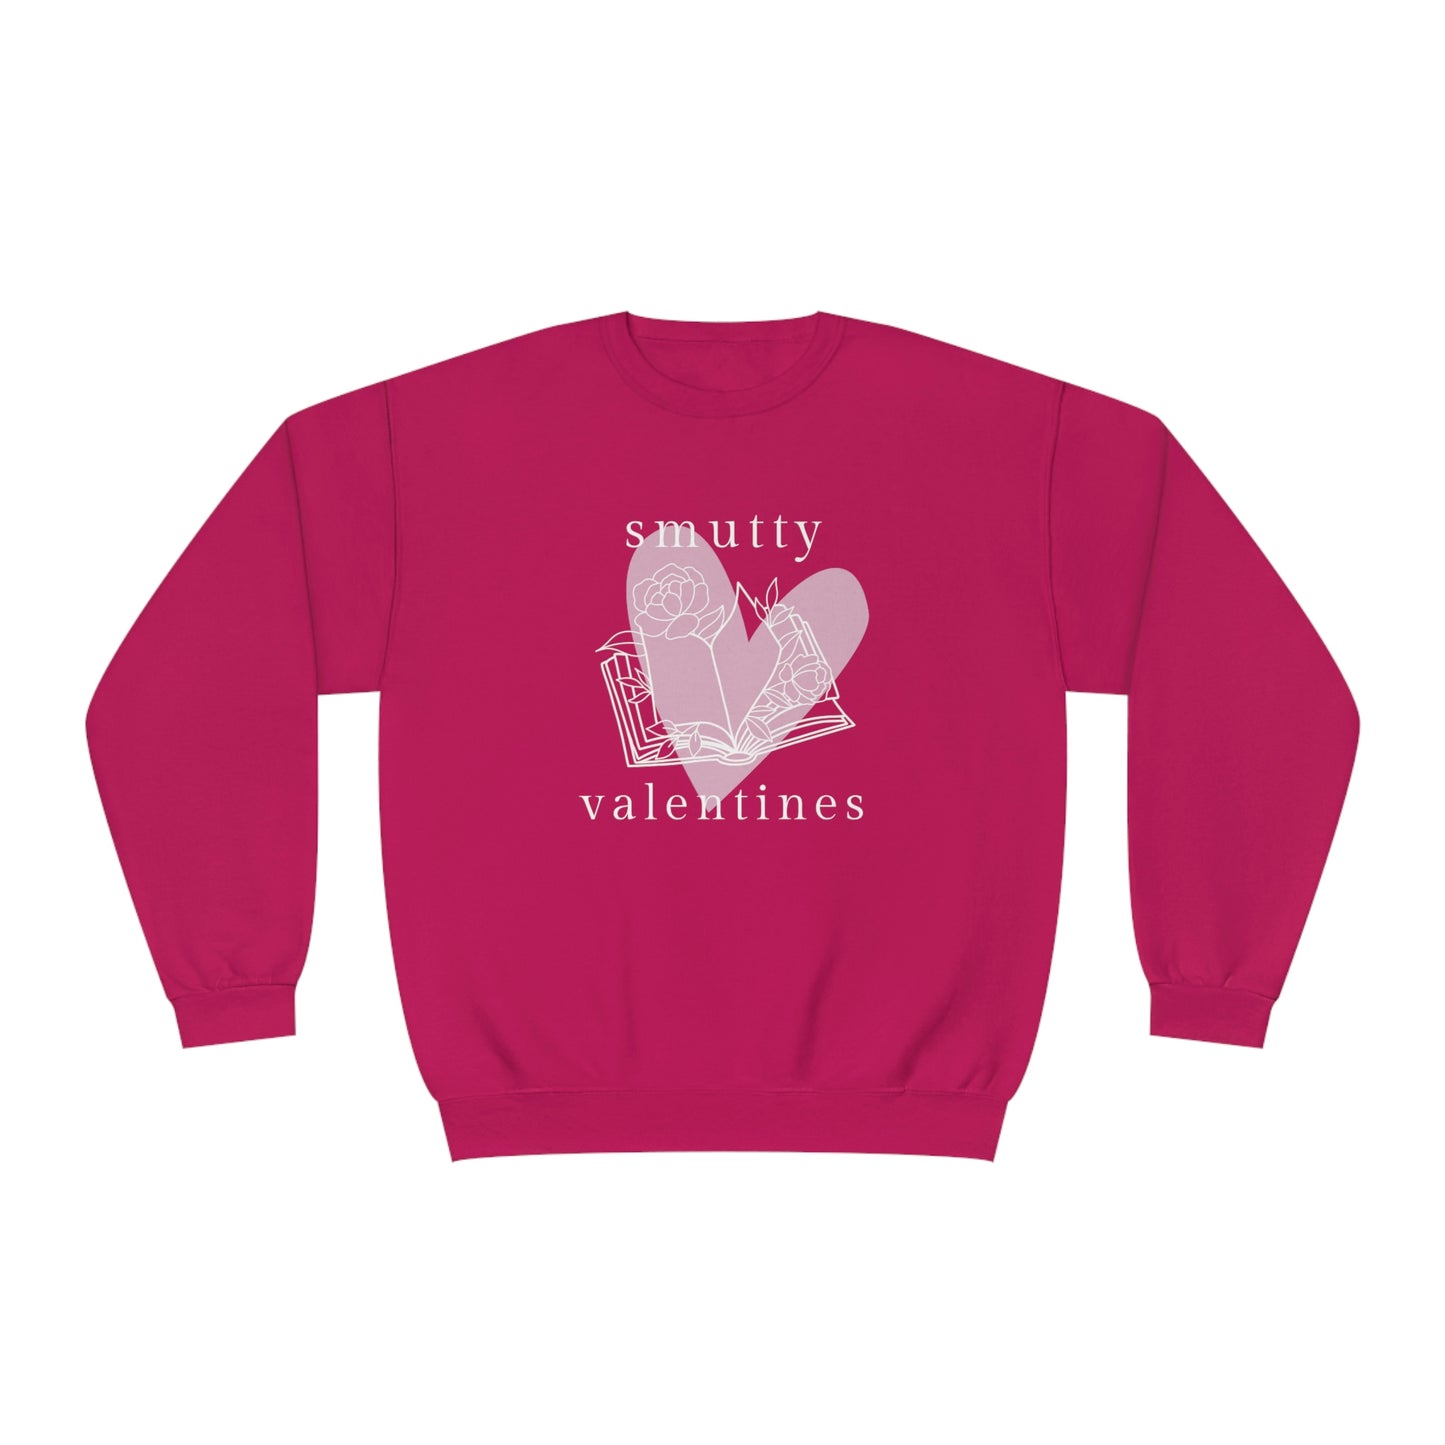 Smutty Valentines Crewneck Sweatshirt